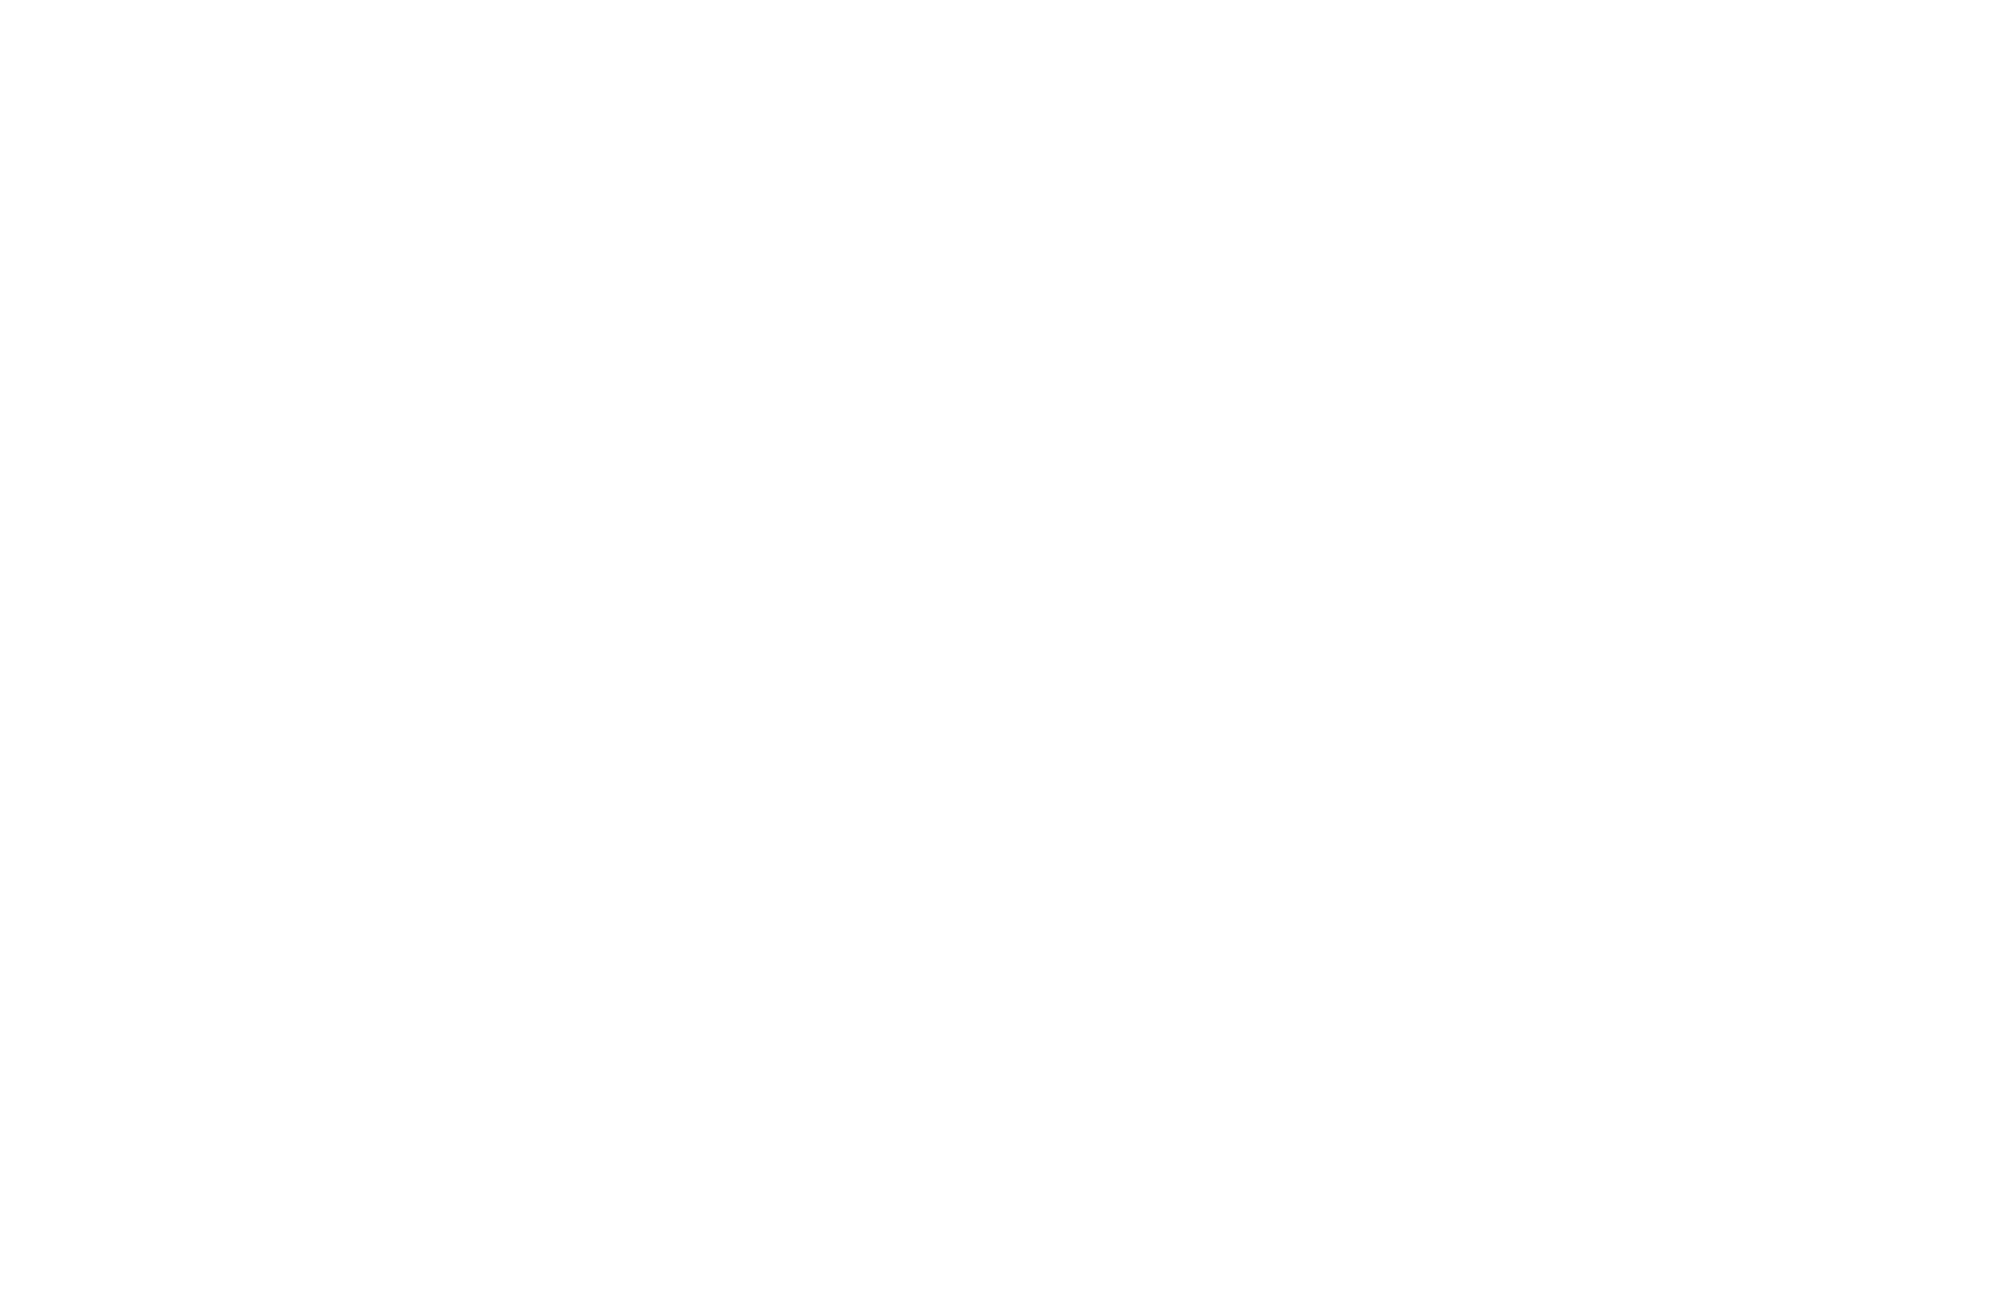 carlo-app-logo-blanco-pago-app-monaco